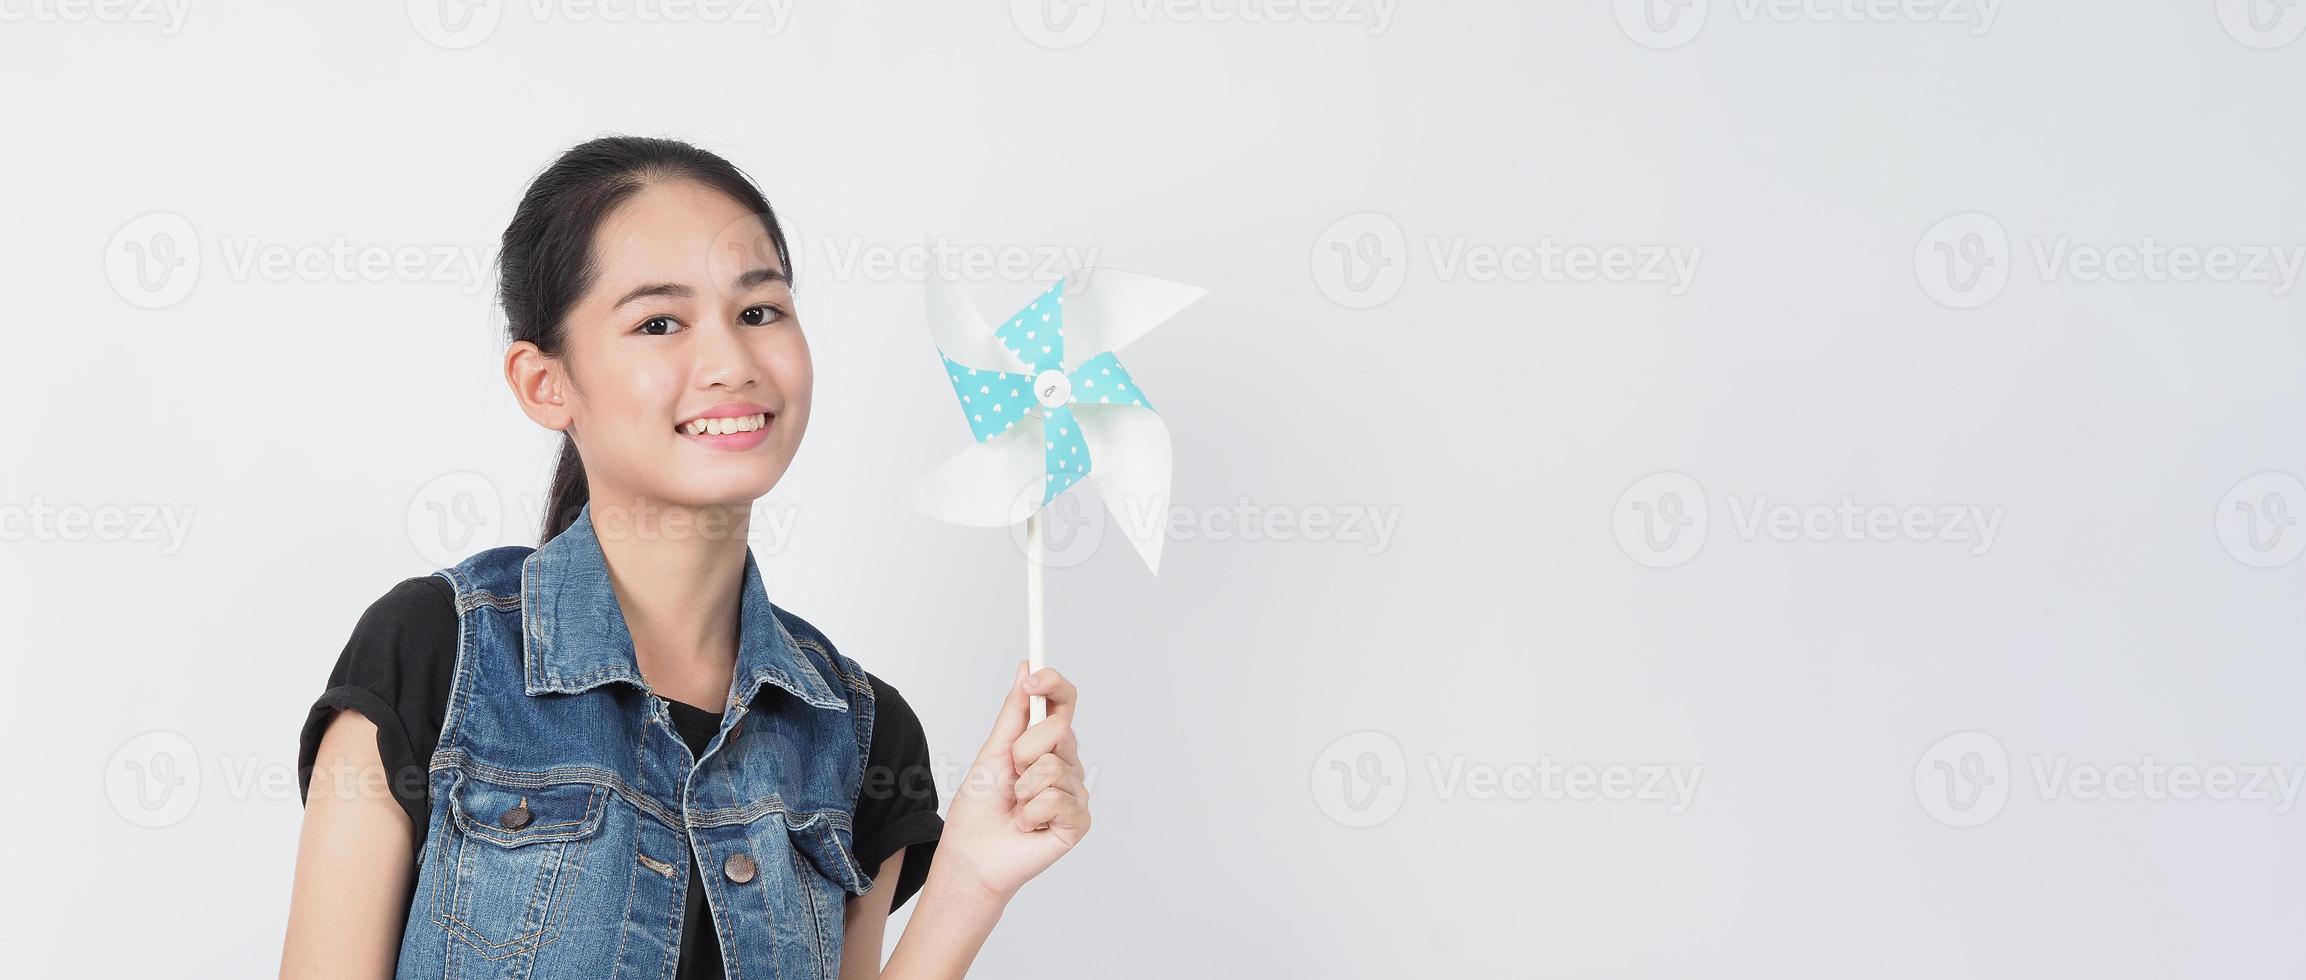 juguetes de molino de viento de papel y mujer adolescente. adolescente con palo de rueda de viento foto